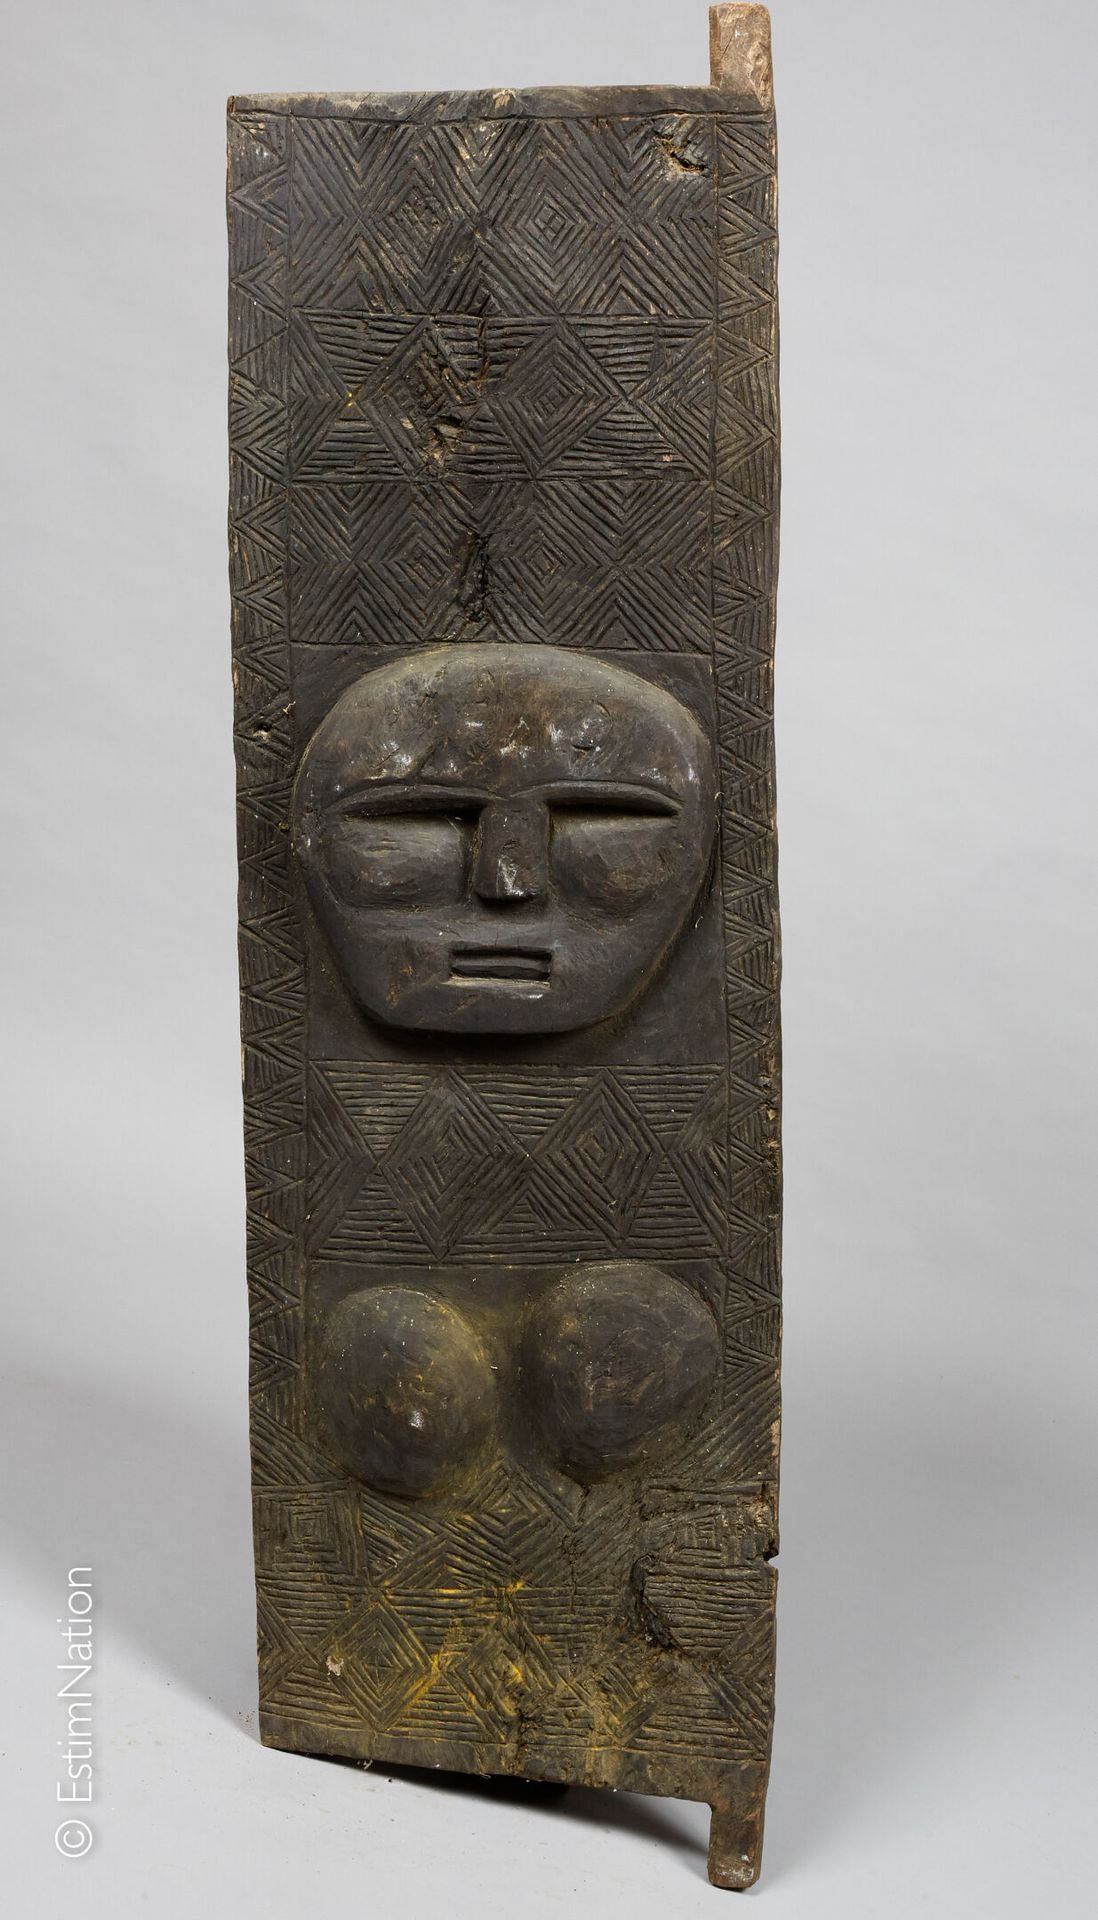 TIMOR 钛合金



雕刻和镌刻的木门，在几何背景上装饰着一个风格化的女性形象。



高度 : 139 cm - 宽度 : 39 cm 

磨损和小部件缺&hellip;